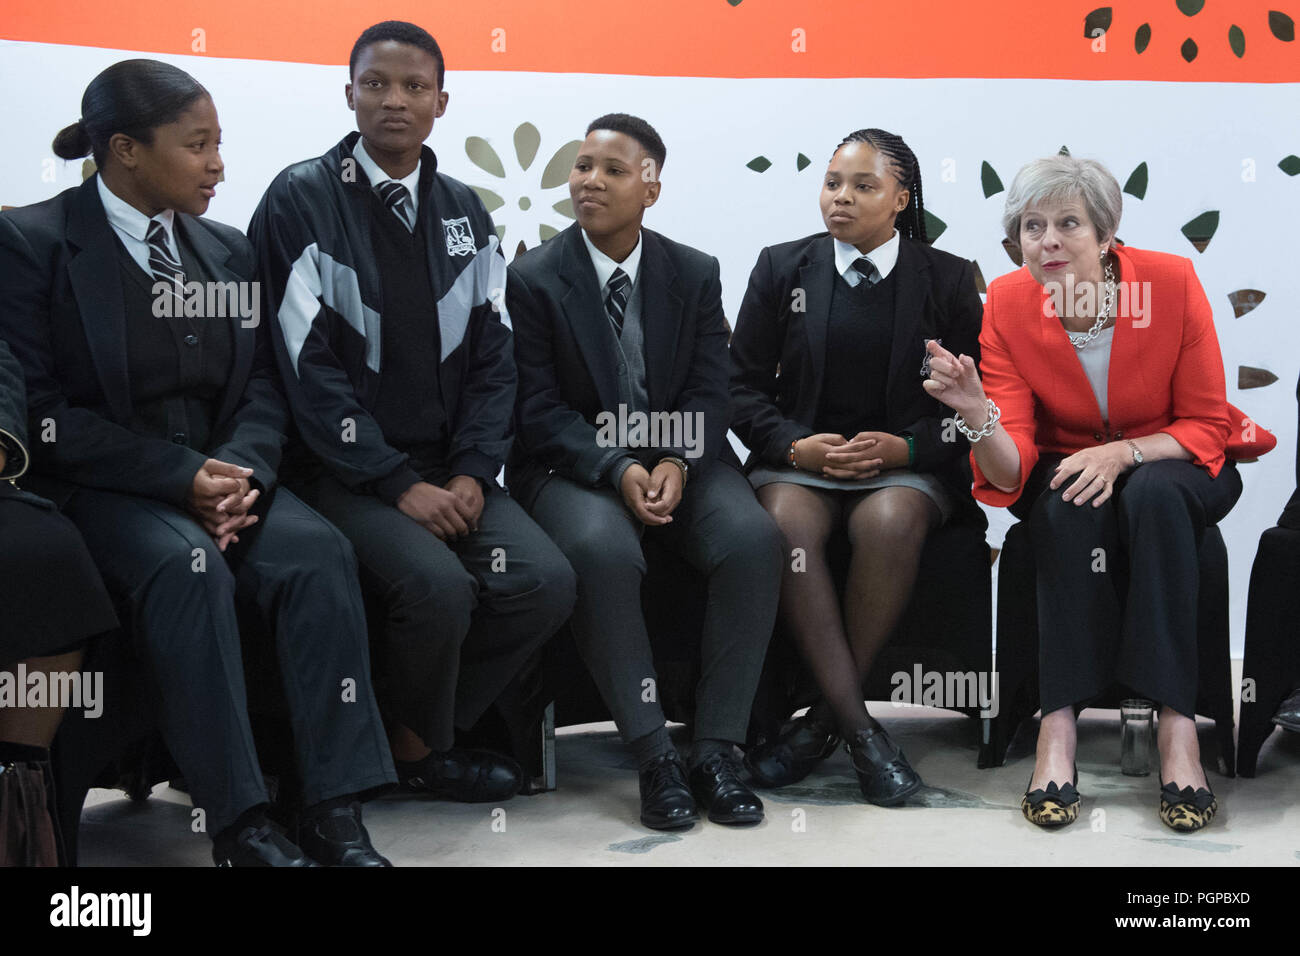 Premierminister Theresa May trifft Studenten und Mitarbeiter an I.D. Mkize Secondary School in Kapstadt, die gekoppelt ist mit Whitby High School in Yorkshire. Die beiden Schulen sind Teil des British Council finanziert Teacher Exchange System mit der Bezeichnung 'Connected Classrooms". Der Premierminister ist am ersten Tag ihrer Reise nach Südafrika, Nigeria und Kenia auf einer Mission für das UK-Brexit Vermögen zu stärken. Stockfoto